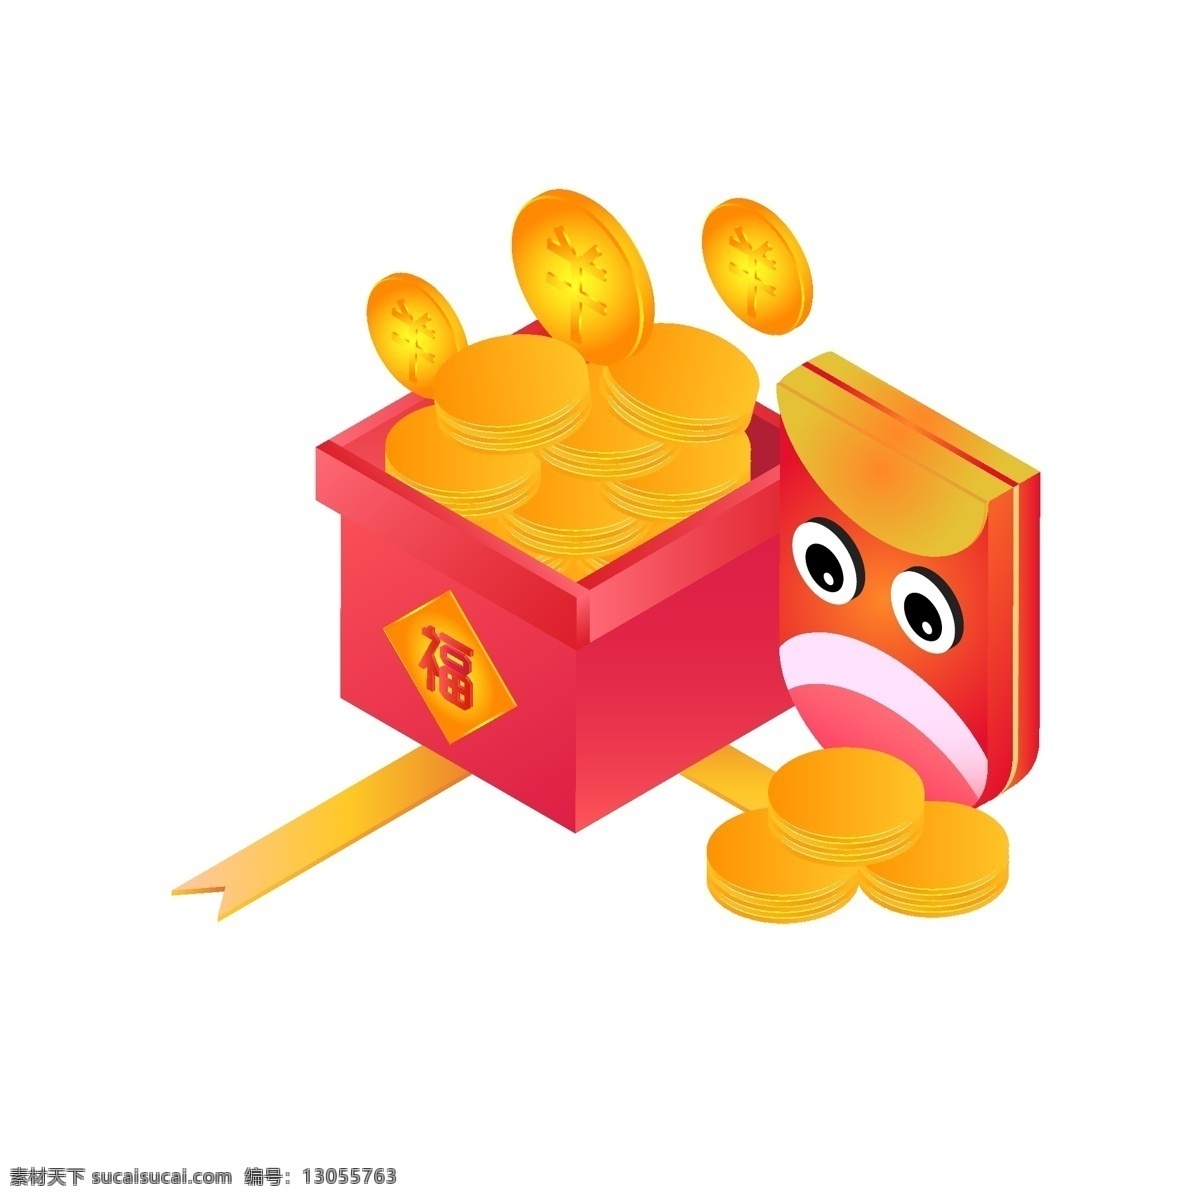 d 新年 红包 礼盒 金币 原创 元素 卡通 设计元素 2.5d ai矢量